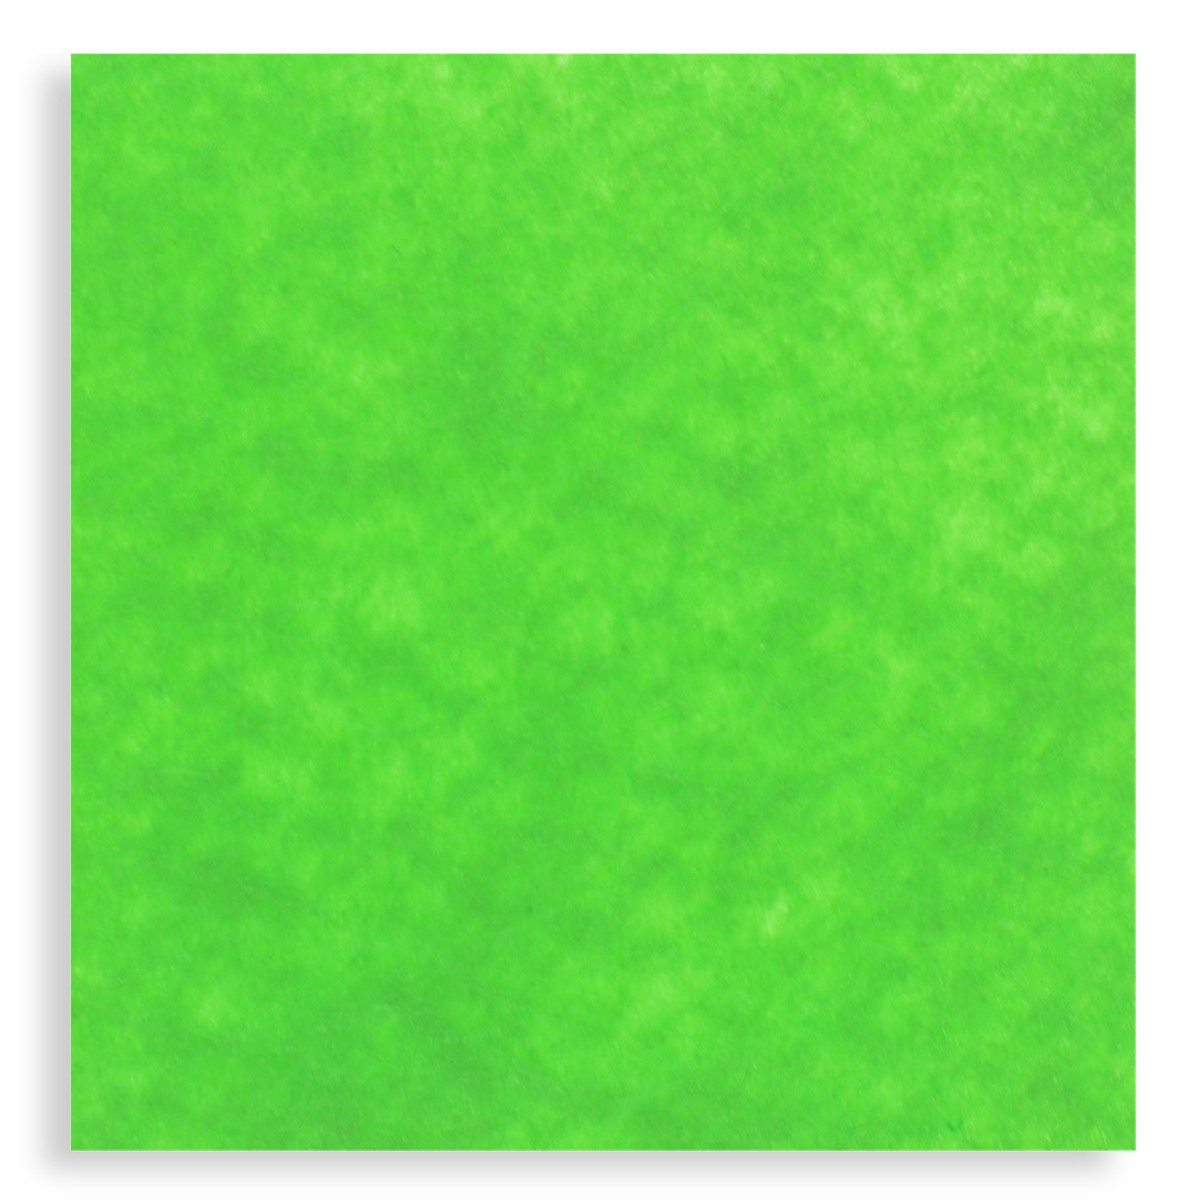 Pasla tare verde mar 49 5x50cm x 2mm